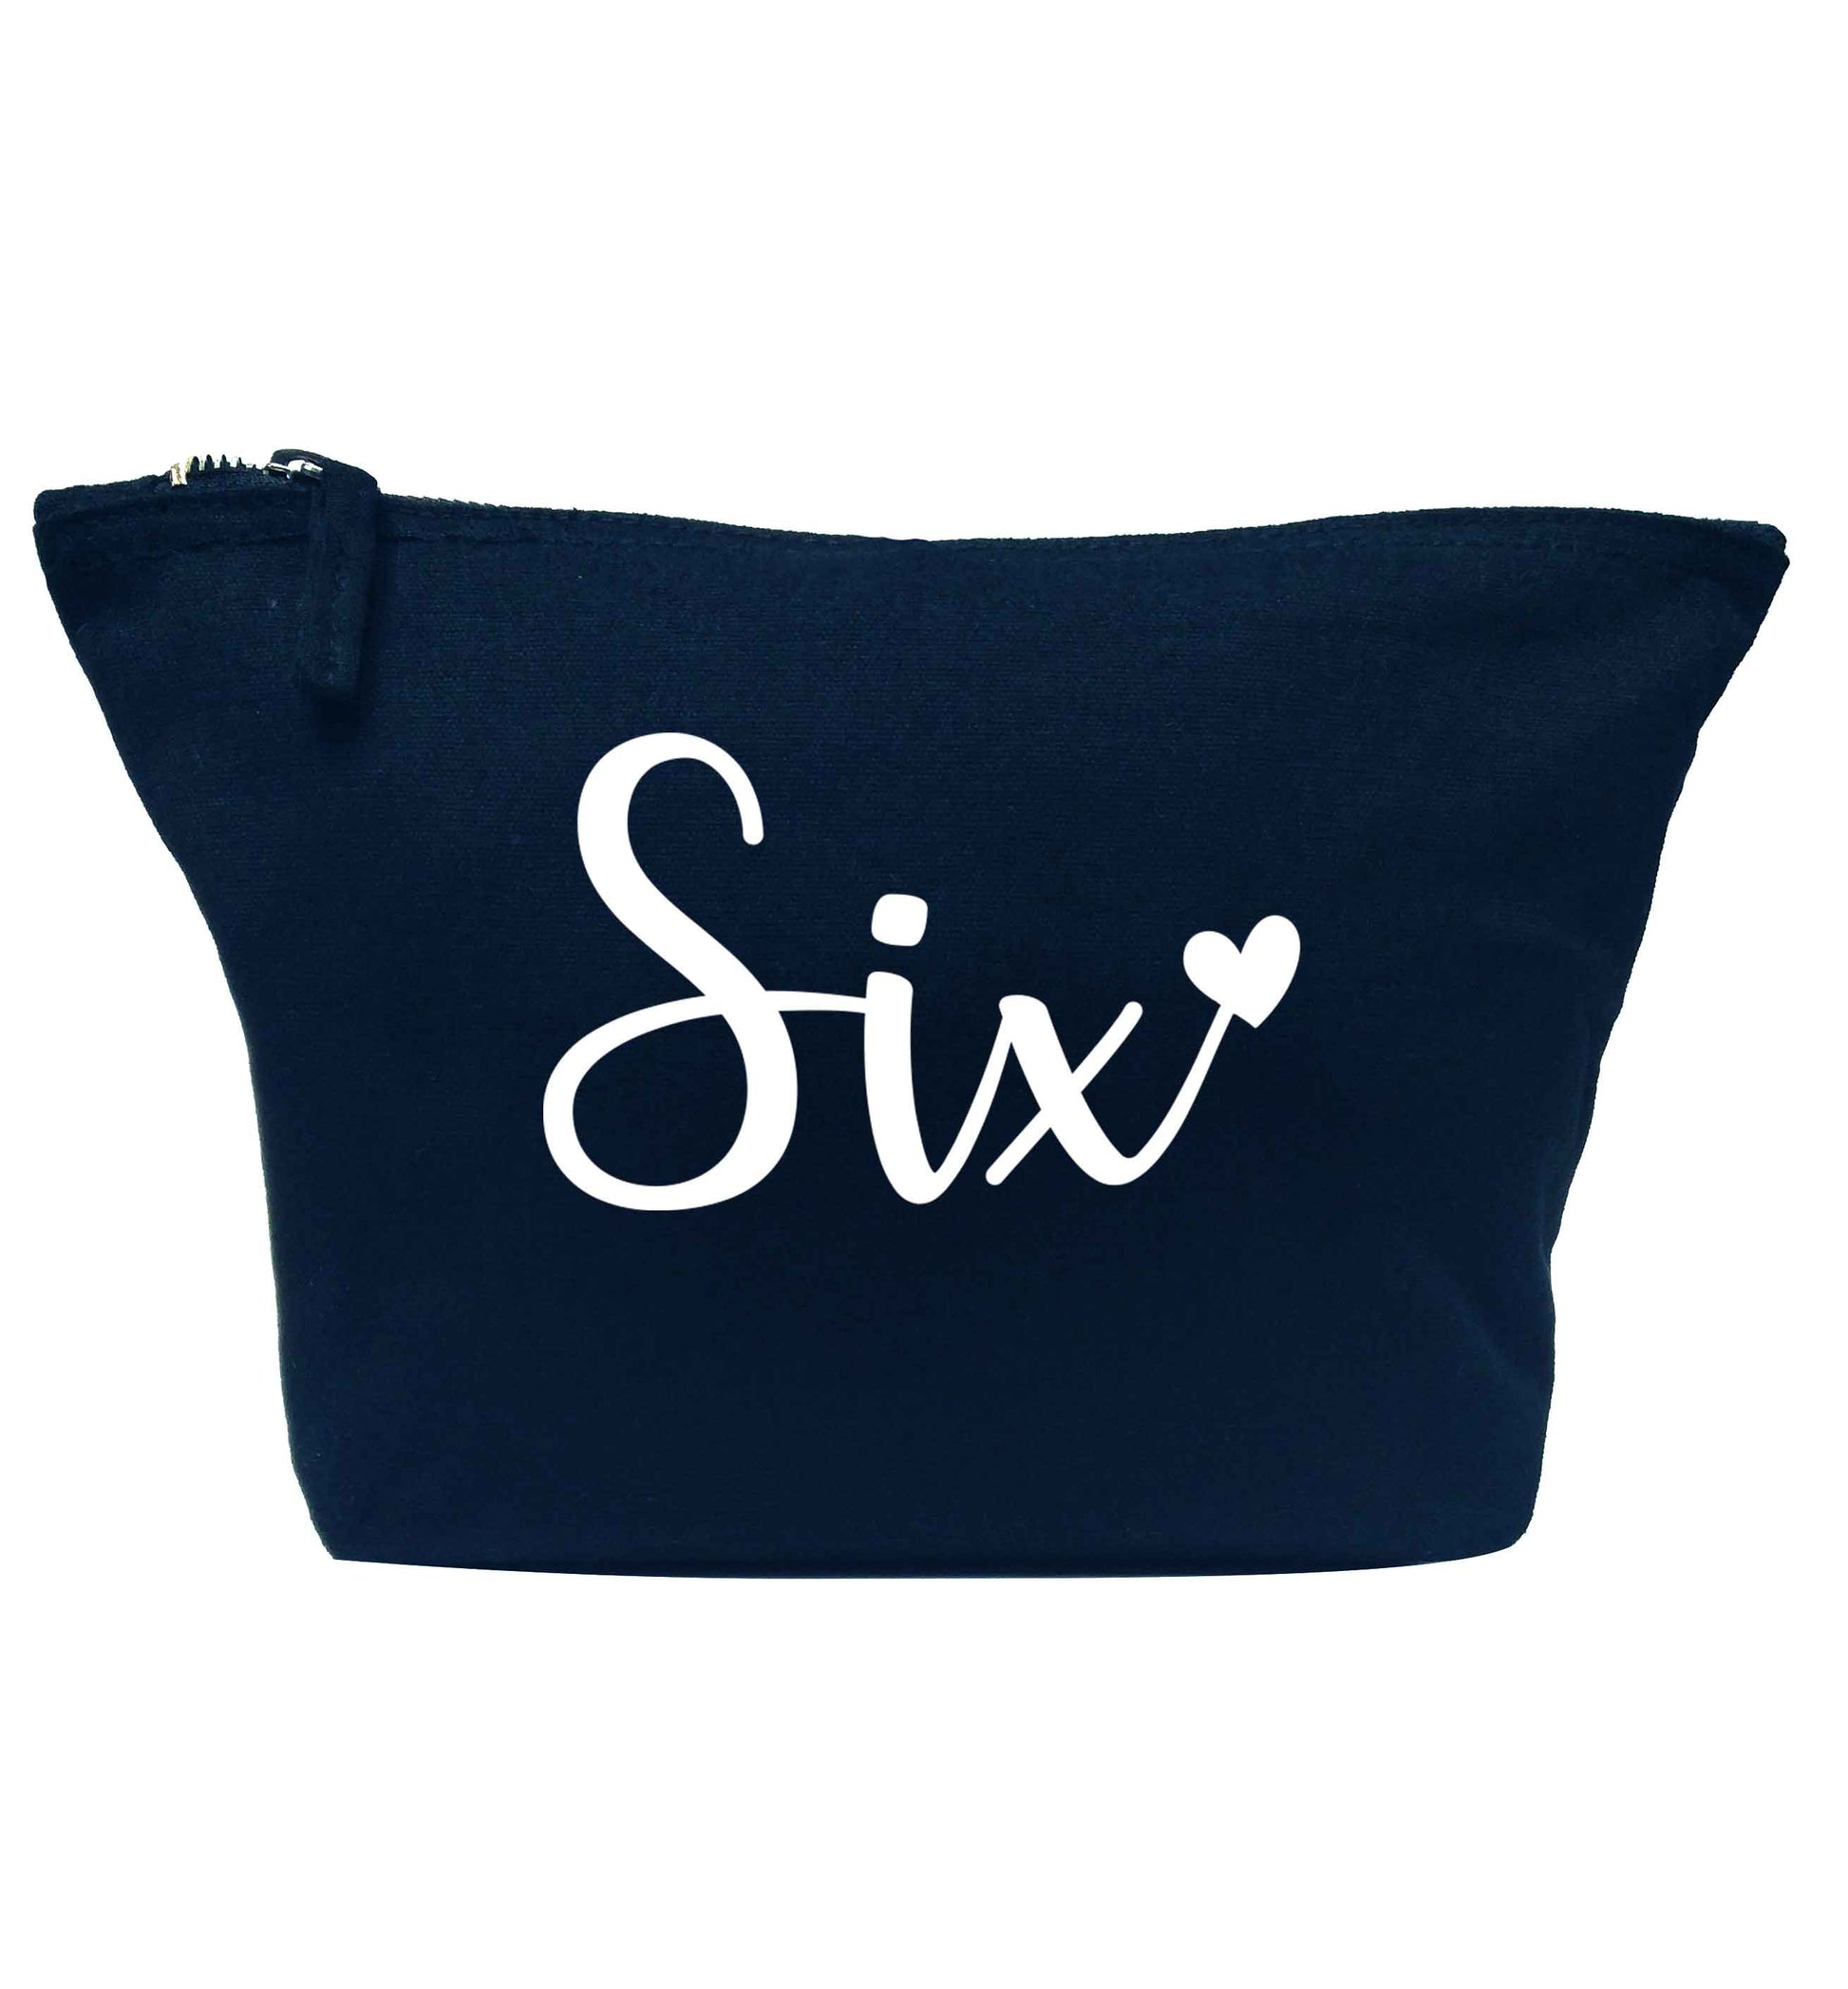 Six and heart! navy makeup bag